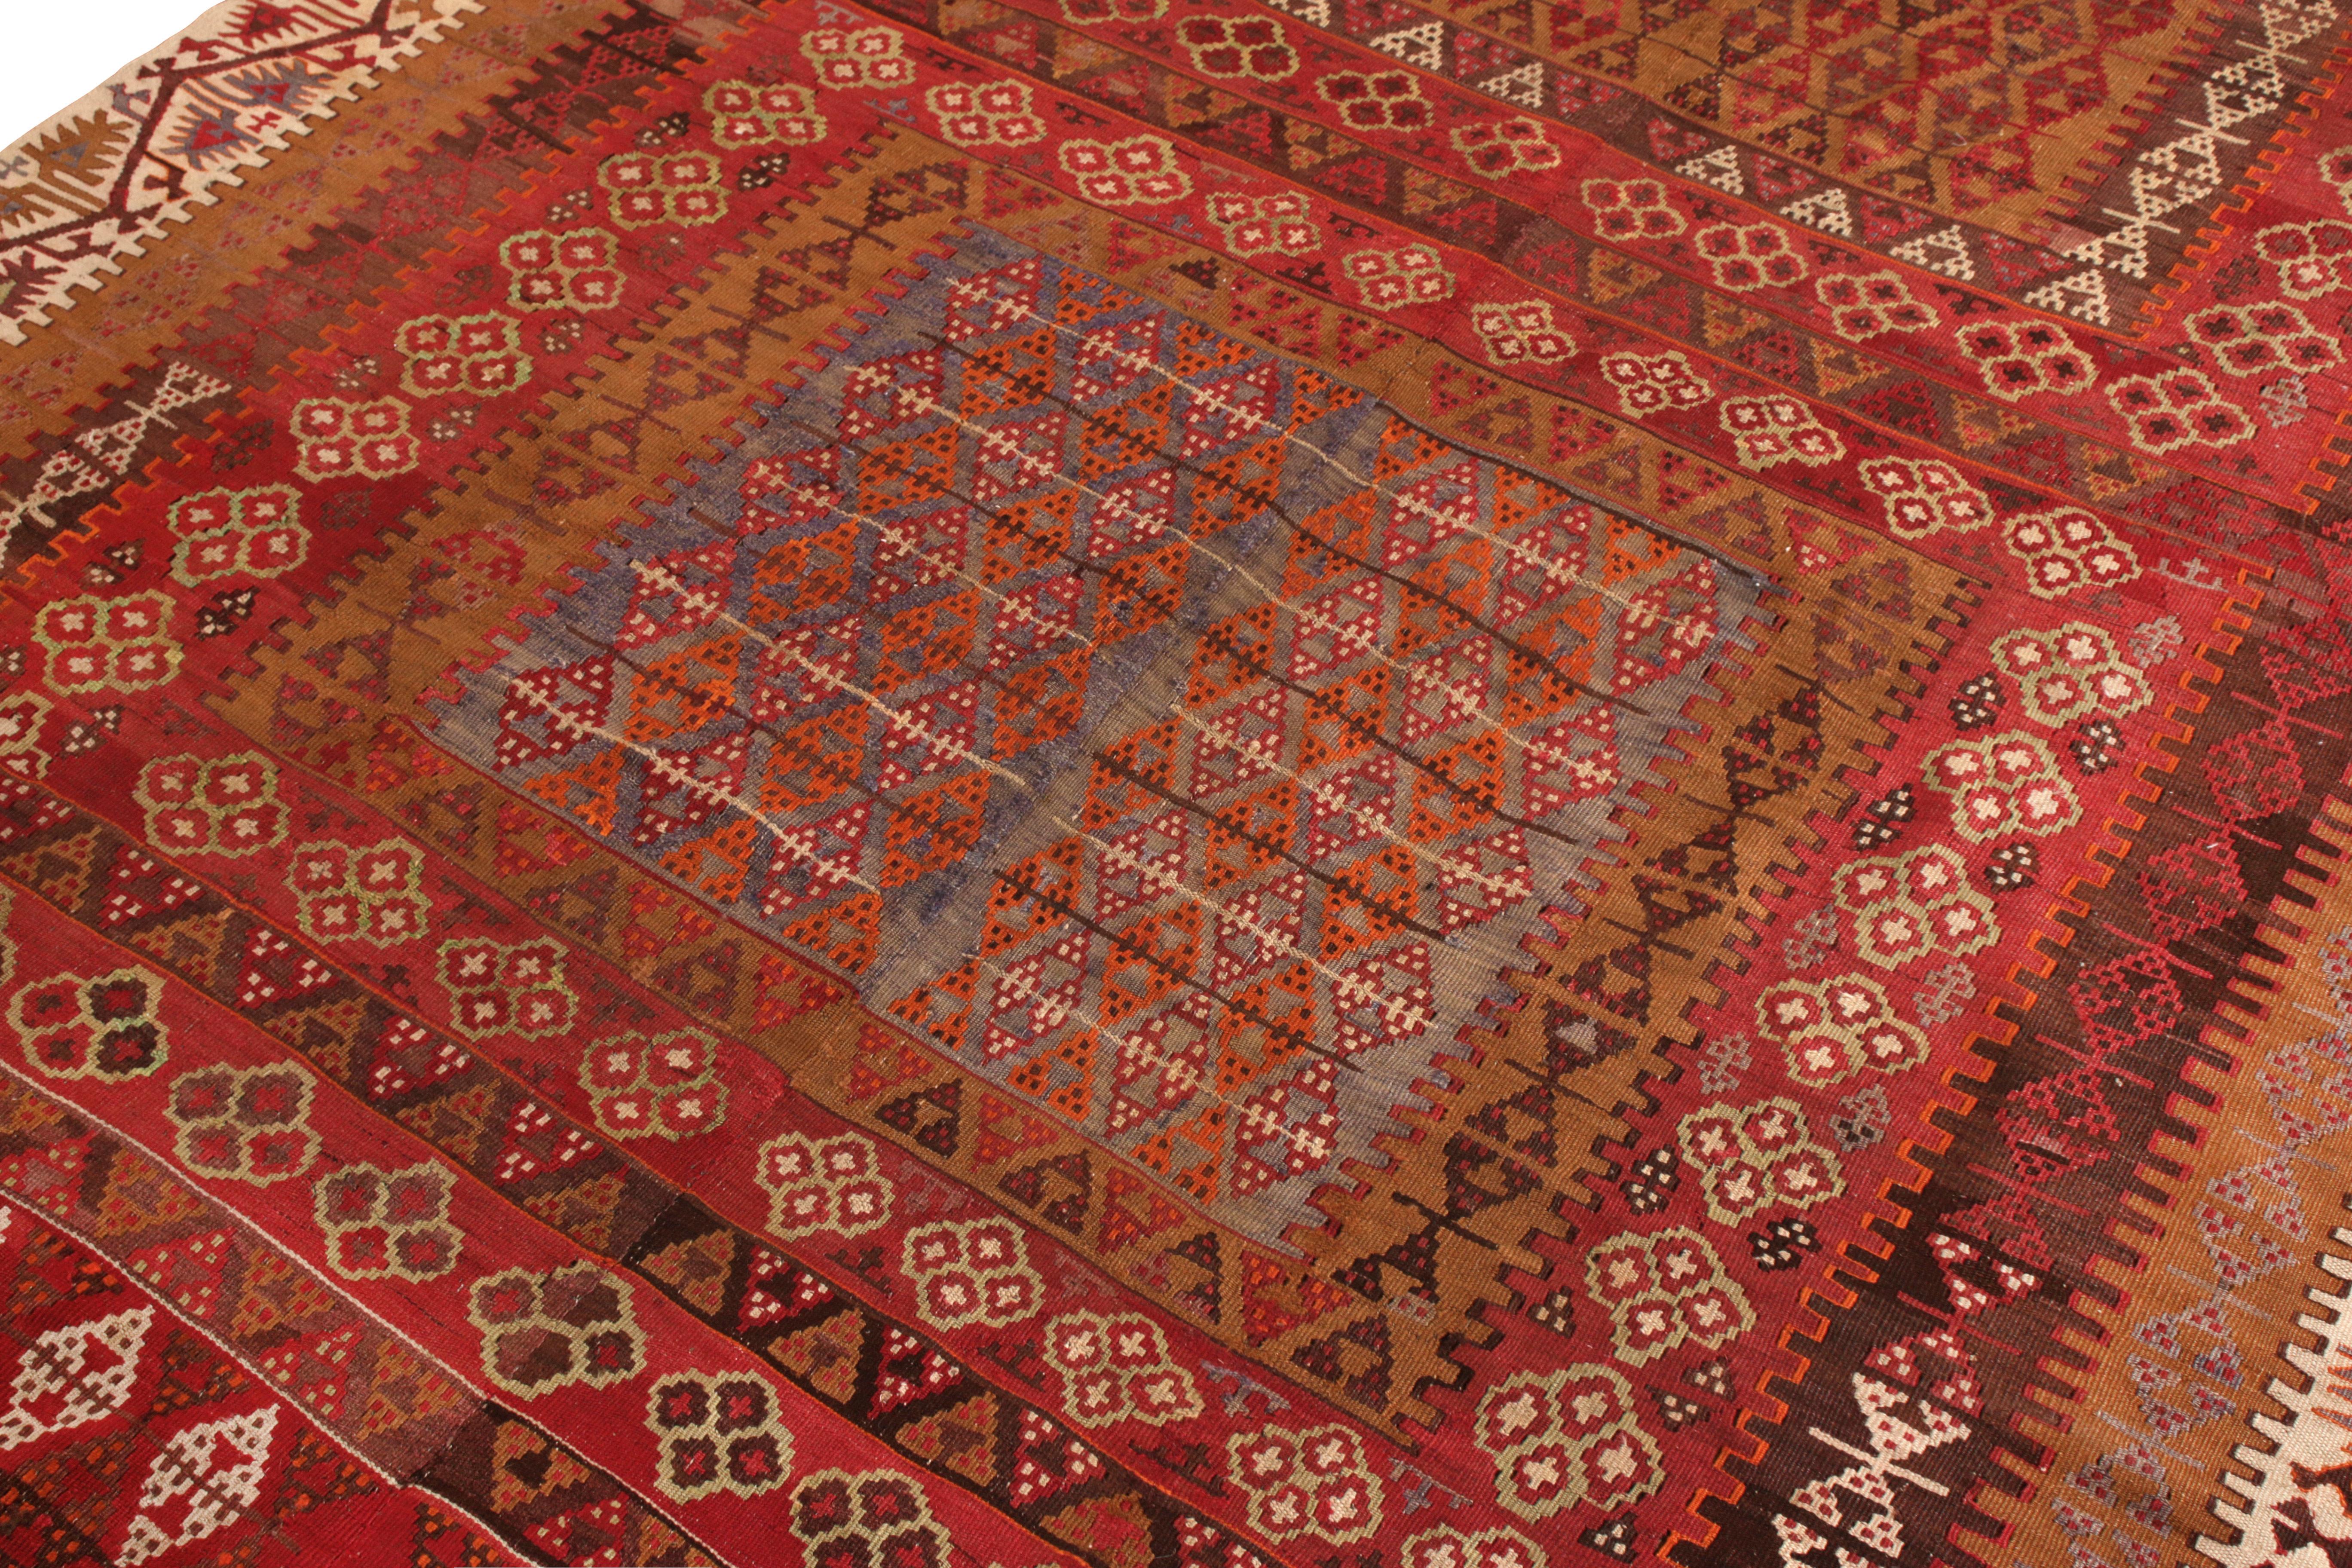 Turkish Vintage Kayseri Kilim Rug in Red and Brown Geometric pattern by Rug & Kilim For Sale